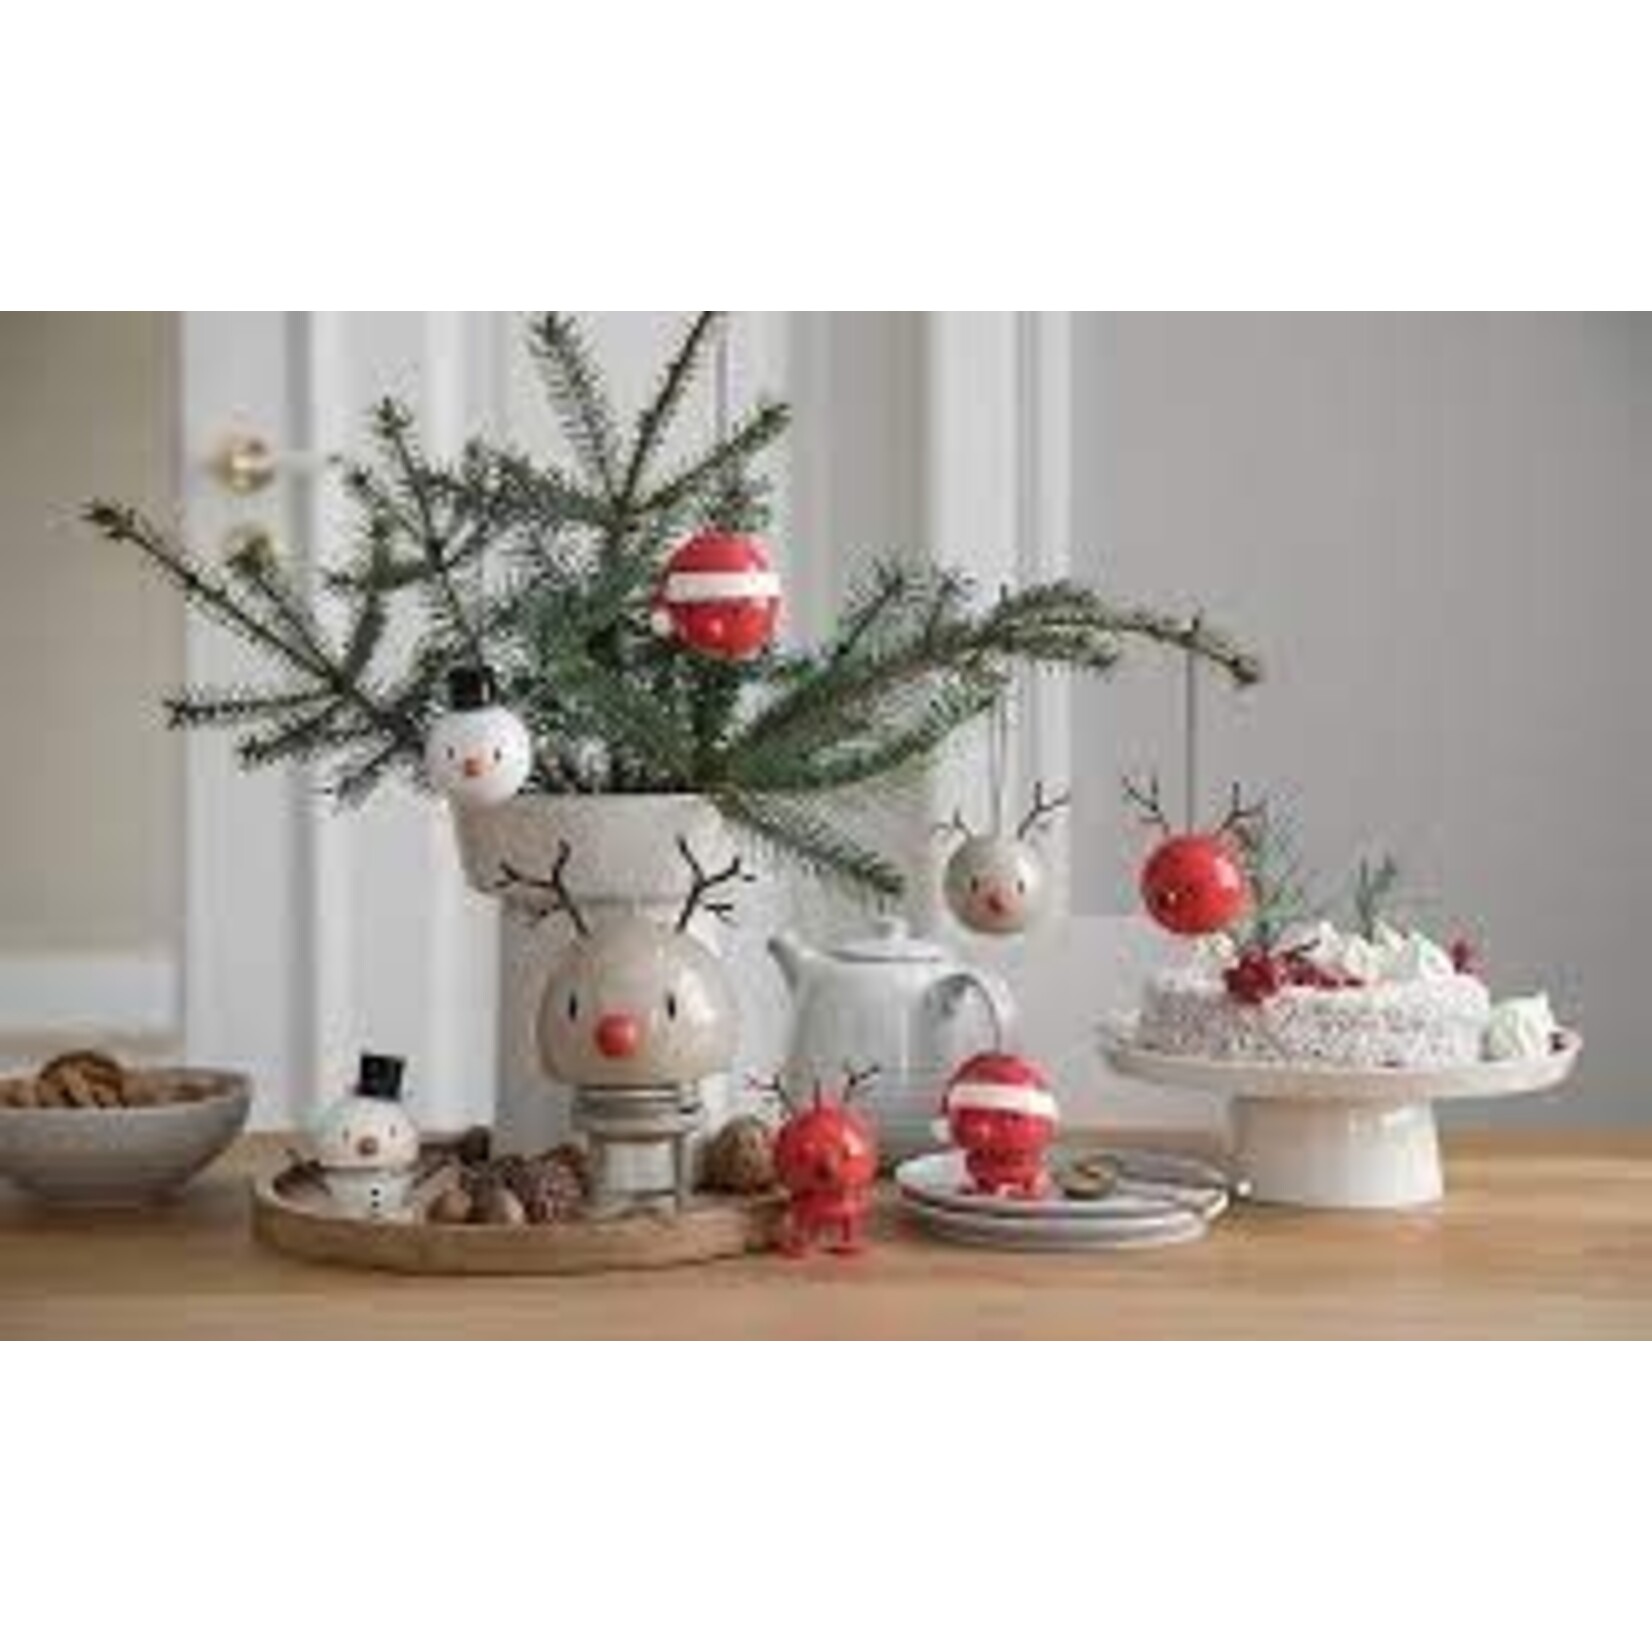 Diverse Merken 2 kerstballen Hoptimist reindeer ornament latte set-2 rendier kerstballen Hoptimist 26097